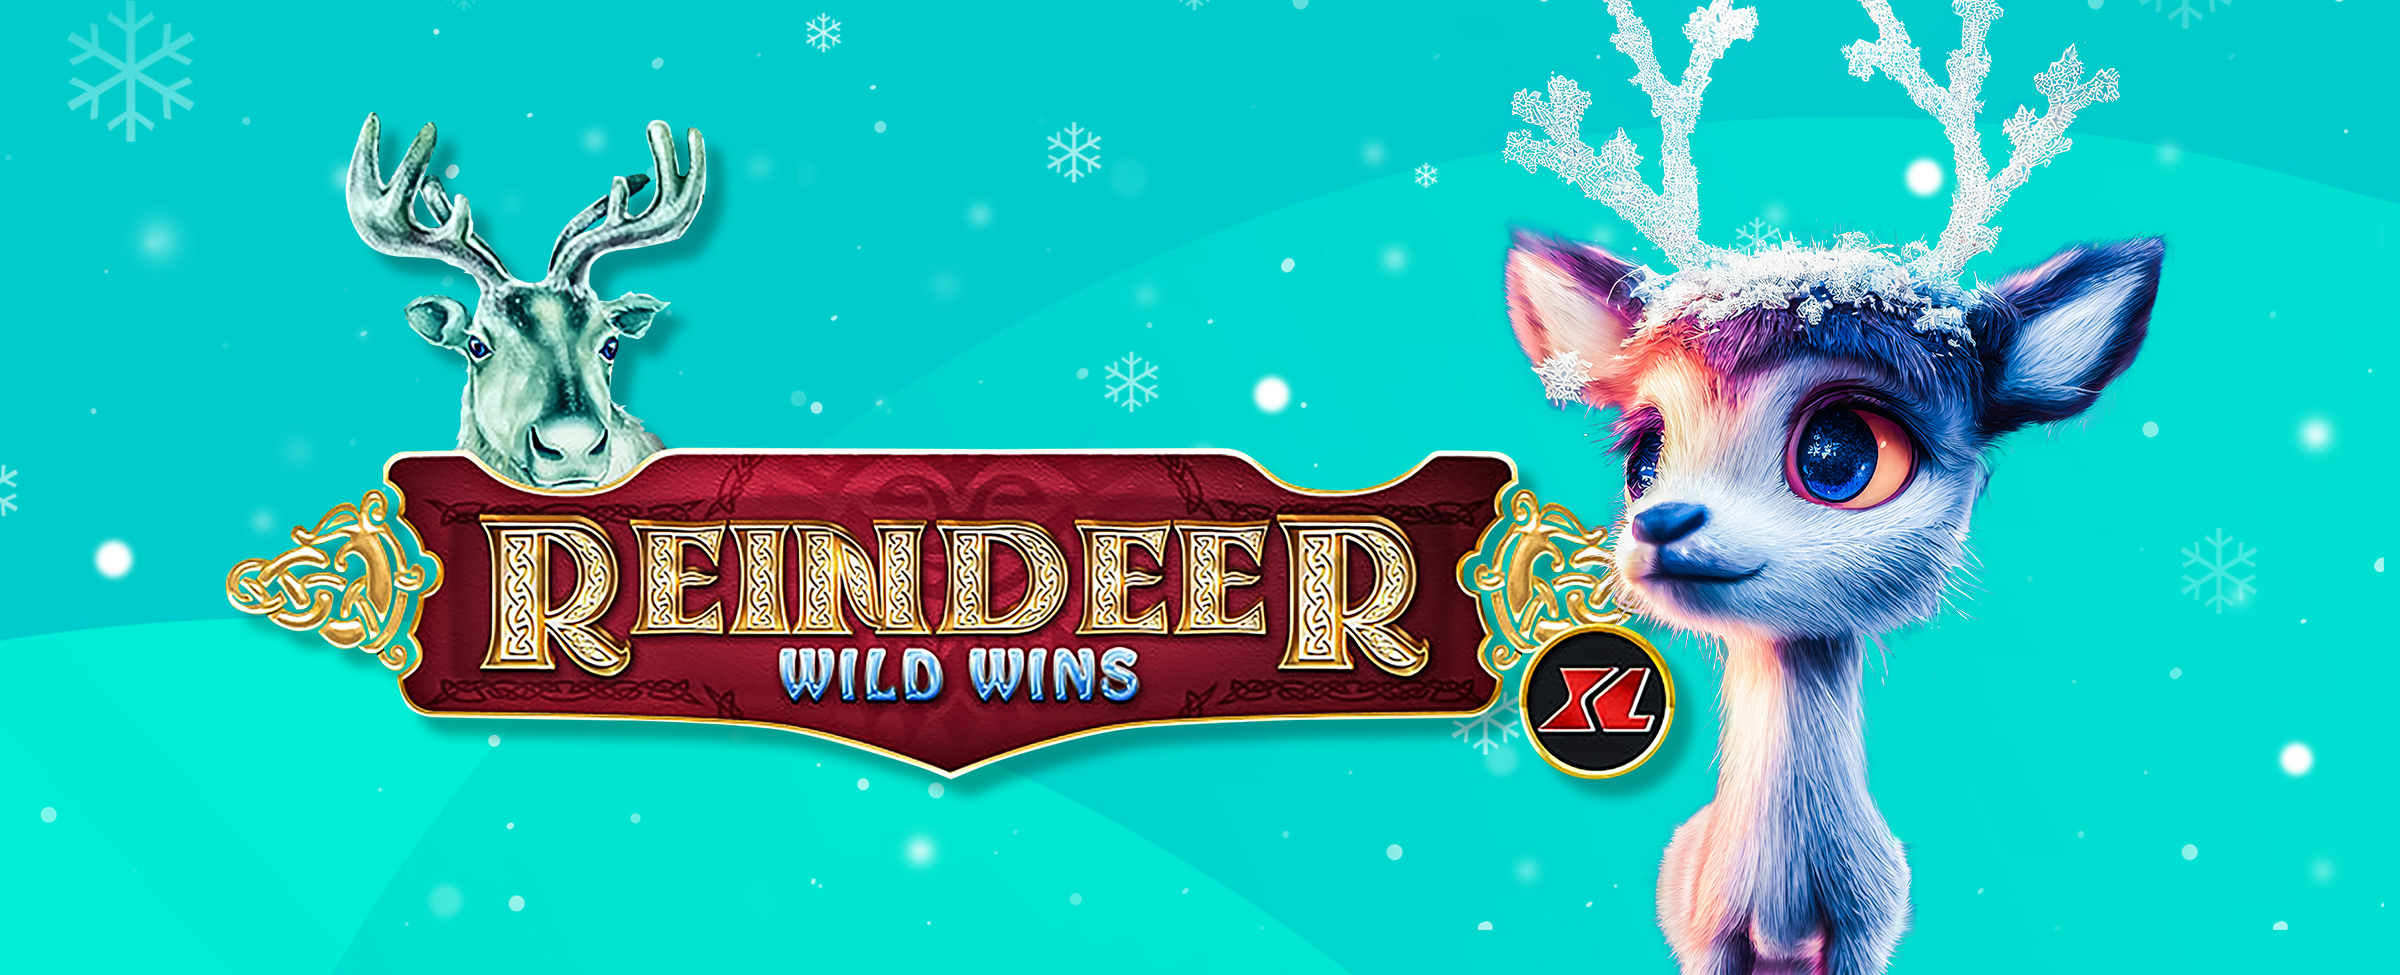 Rusa kutub 3D animasi dengan tanduk dalam formasi seperti salju muncul di sebelah kanan logo permainan slot SlotsLV untuk Reindeer Wild Winds XL.